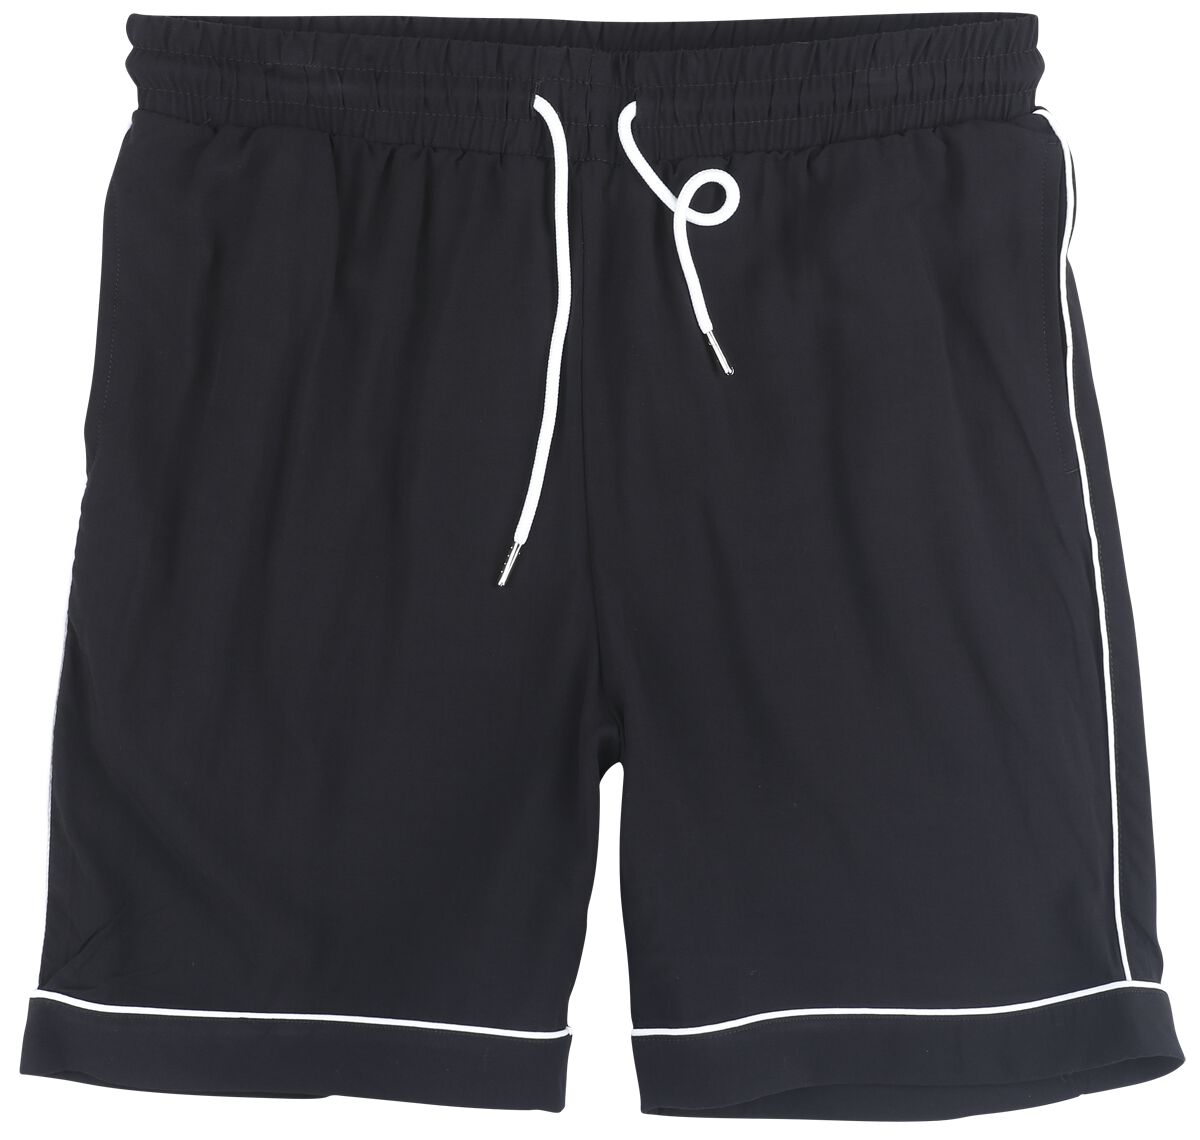 Urban Classics Short - Bowling Shorts - S bis 3XL - für Männer - Größe XL - schwarz